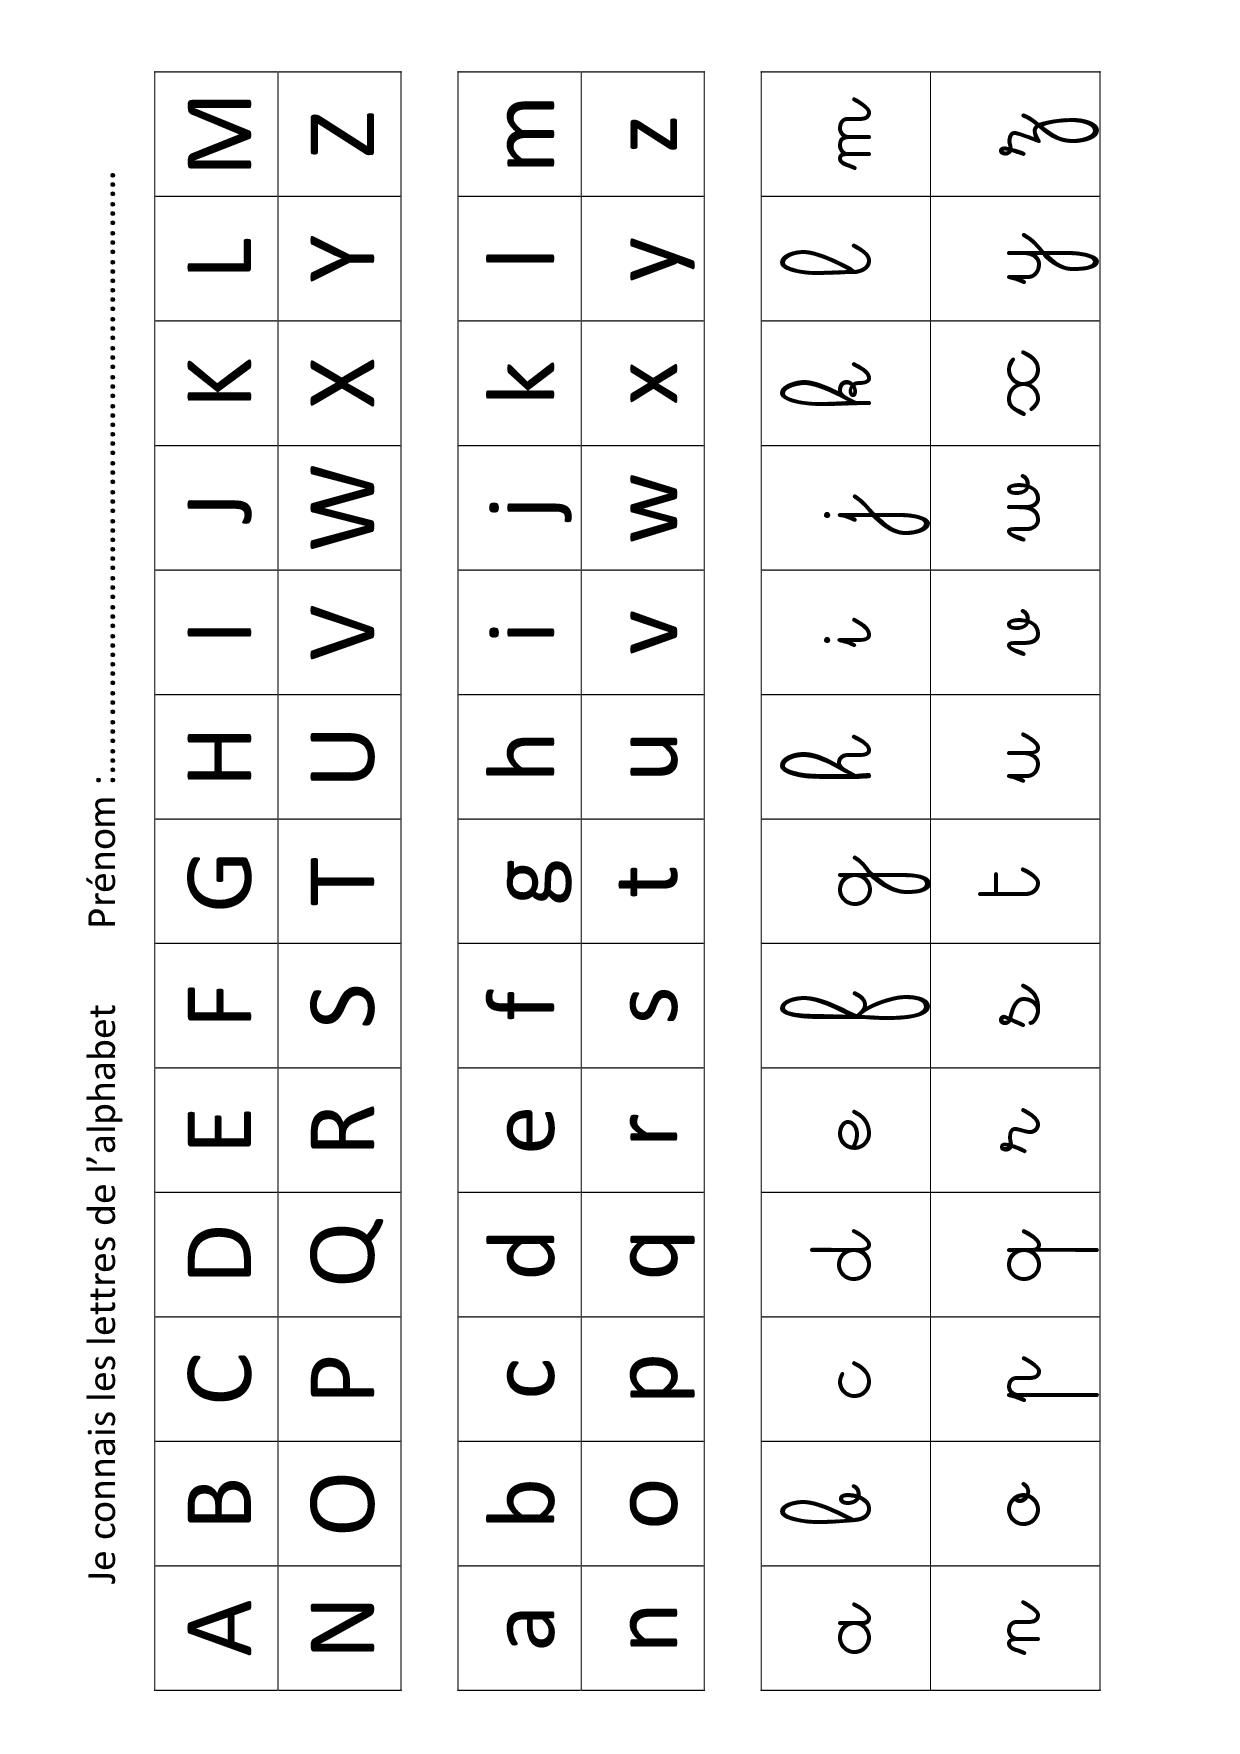 Apprendre Les Lettres De L&amp;#039;alphabet Avec Leap Frog dedans Exercice D Alphabet En Maternelle 